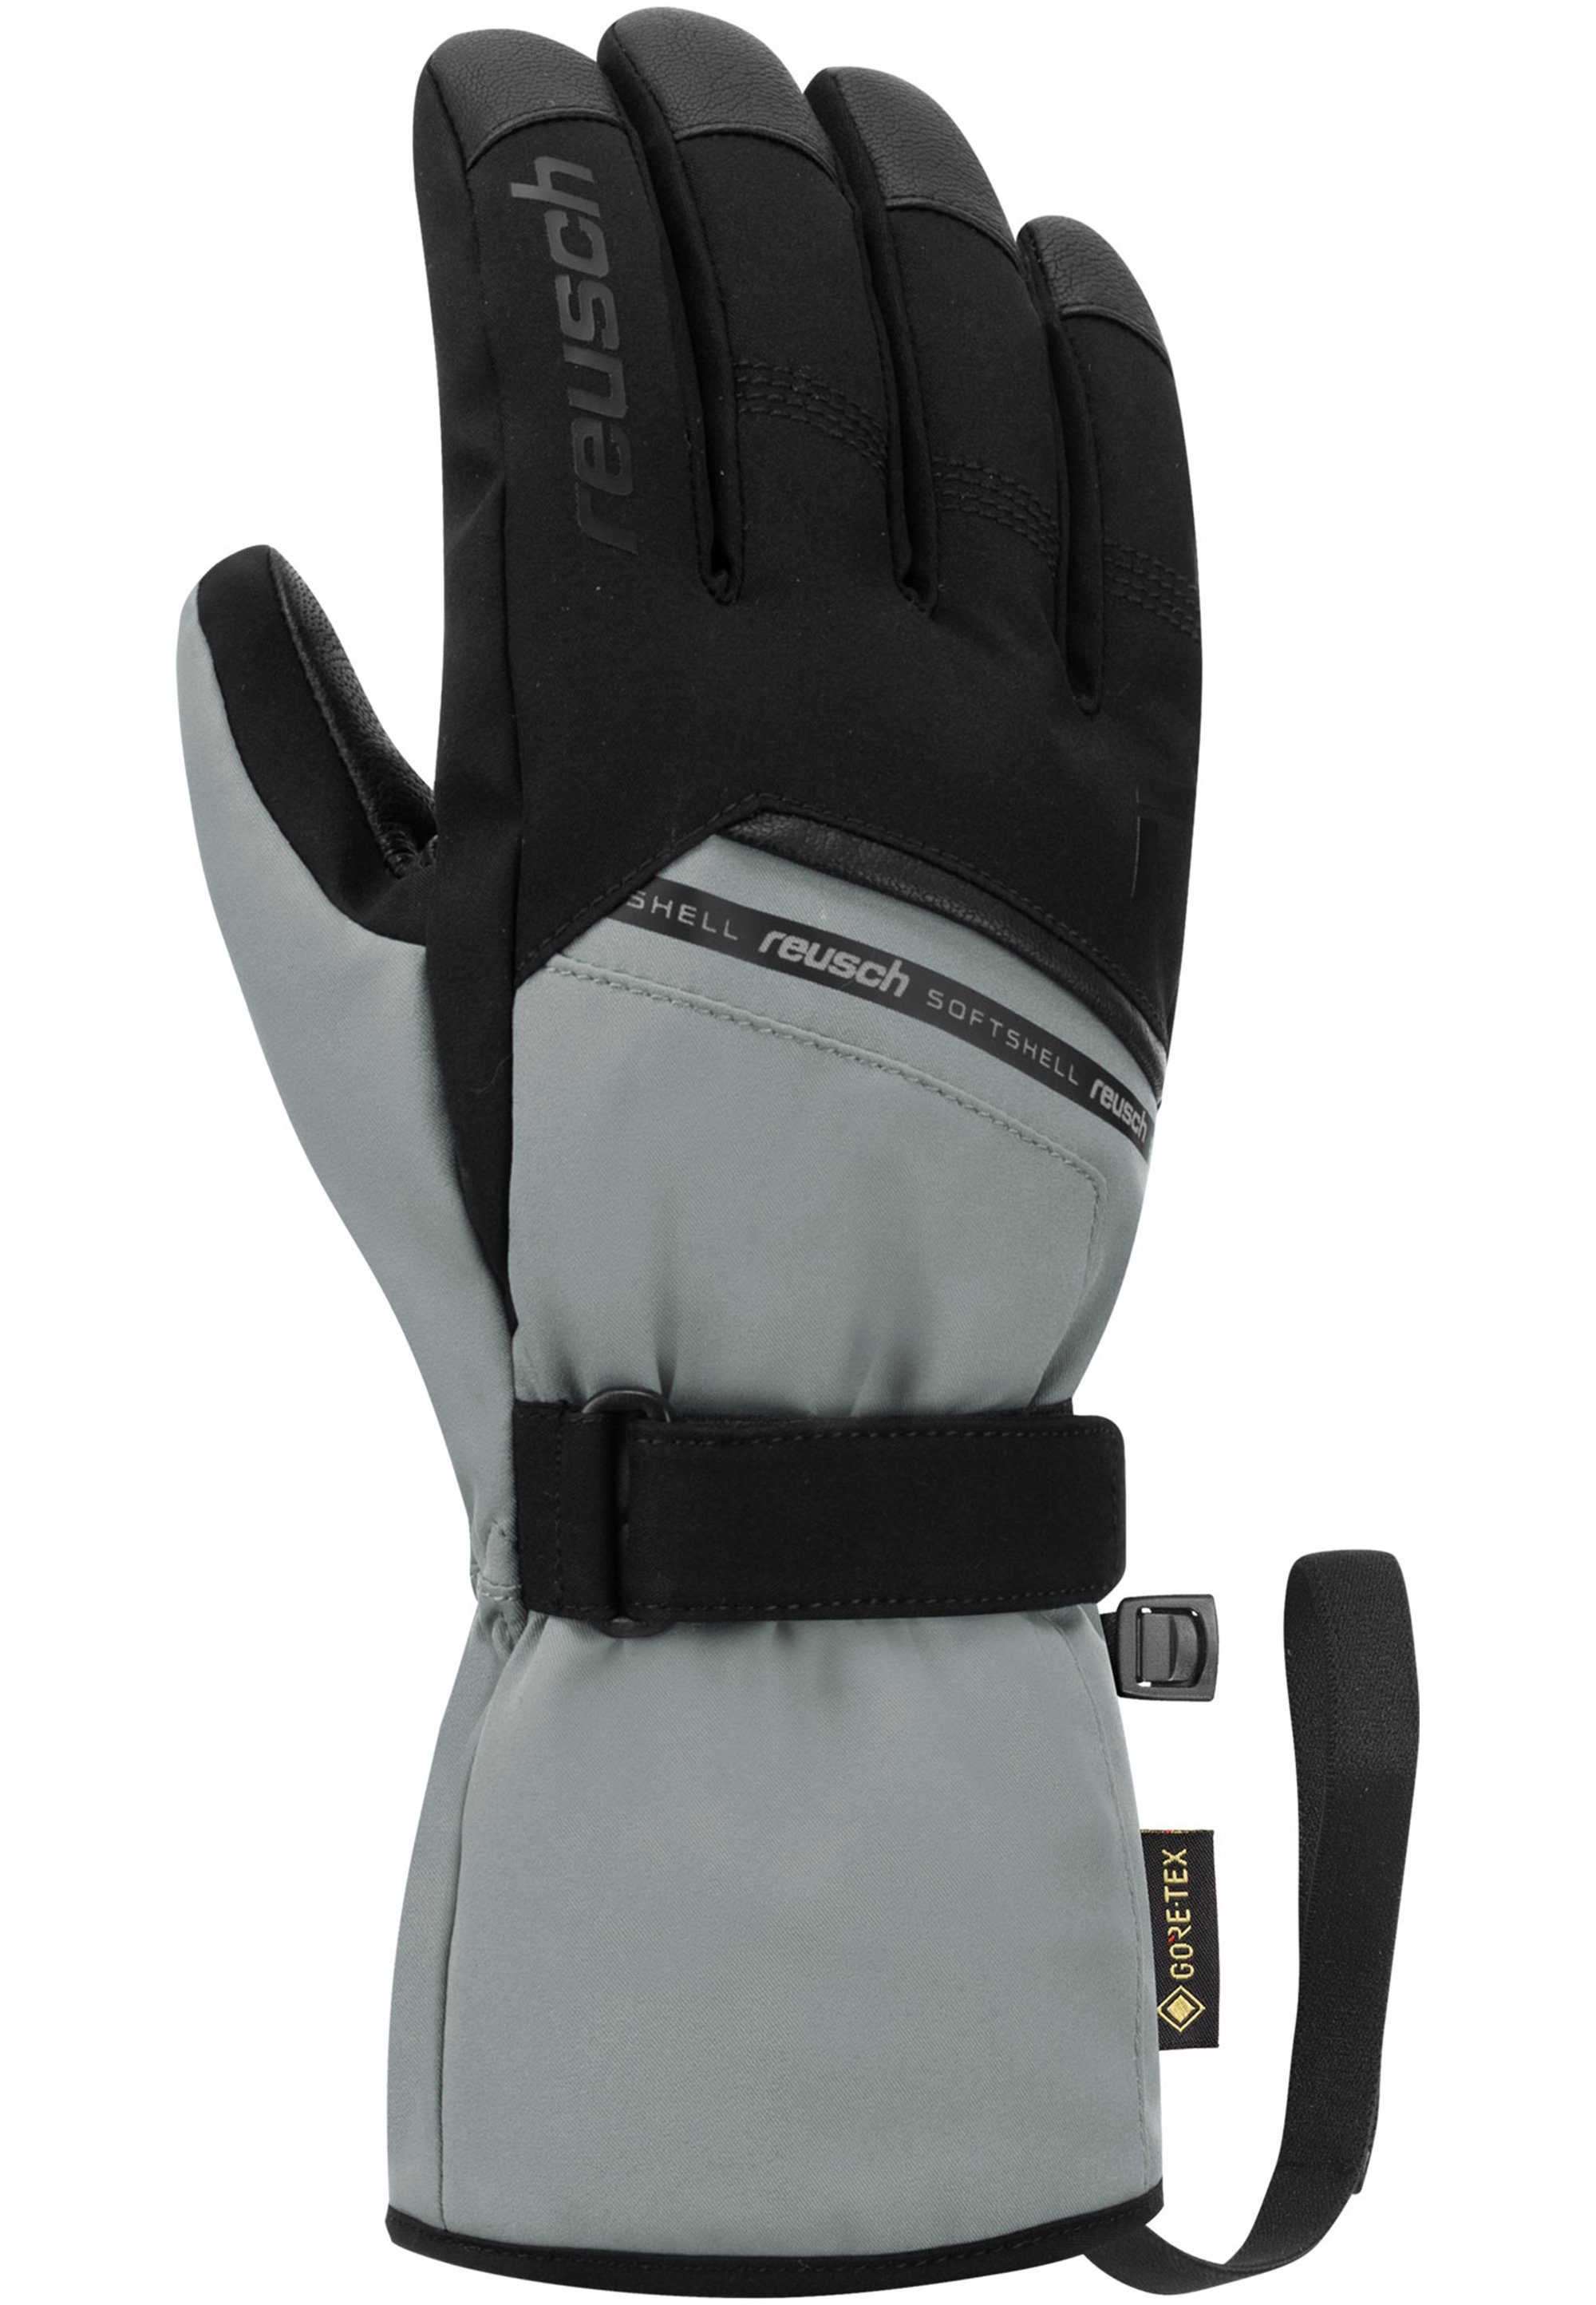 in grau-schwarz Reusch Skihandschuhe Qualität atmungsaktiver GORE-TEX Morris